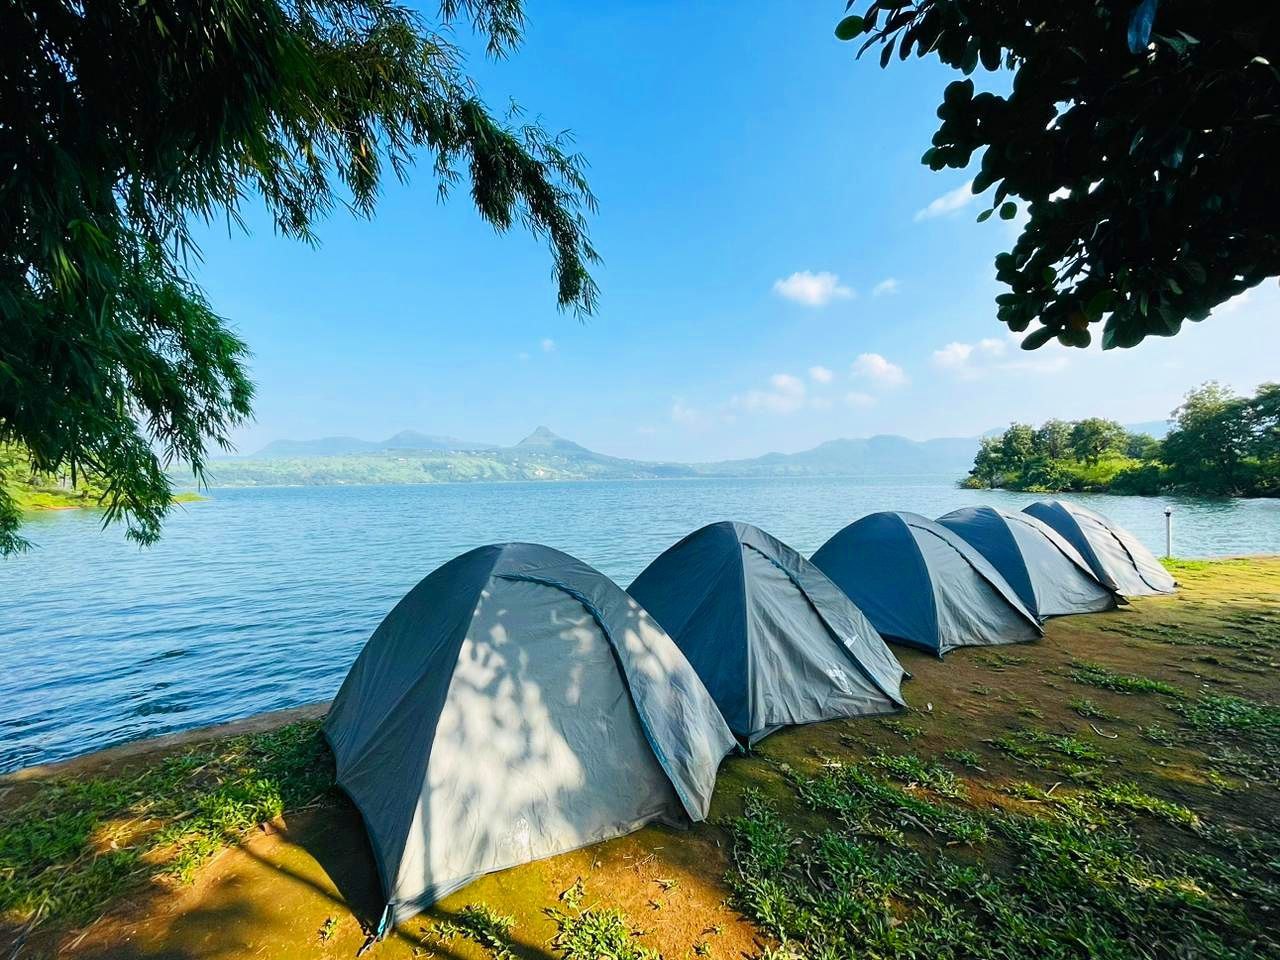 Day camping at Pawna lake